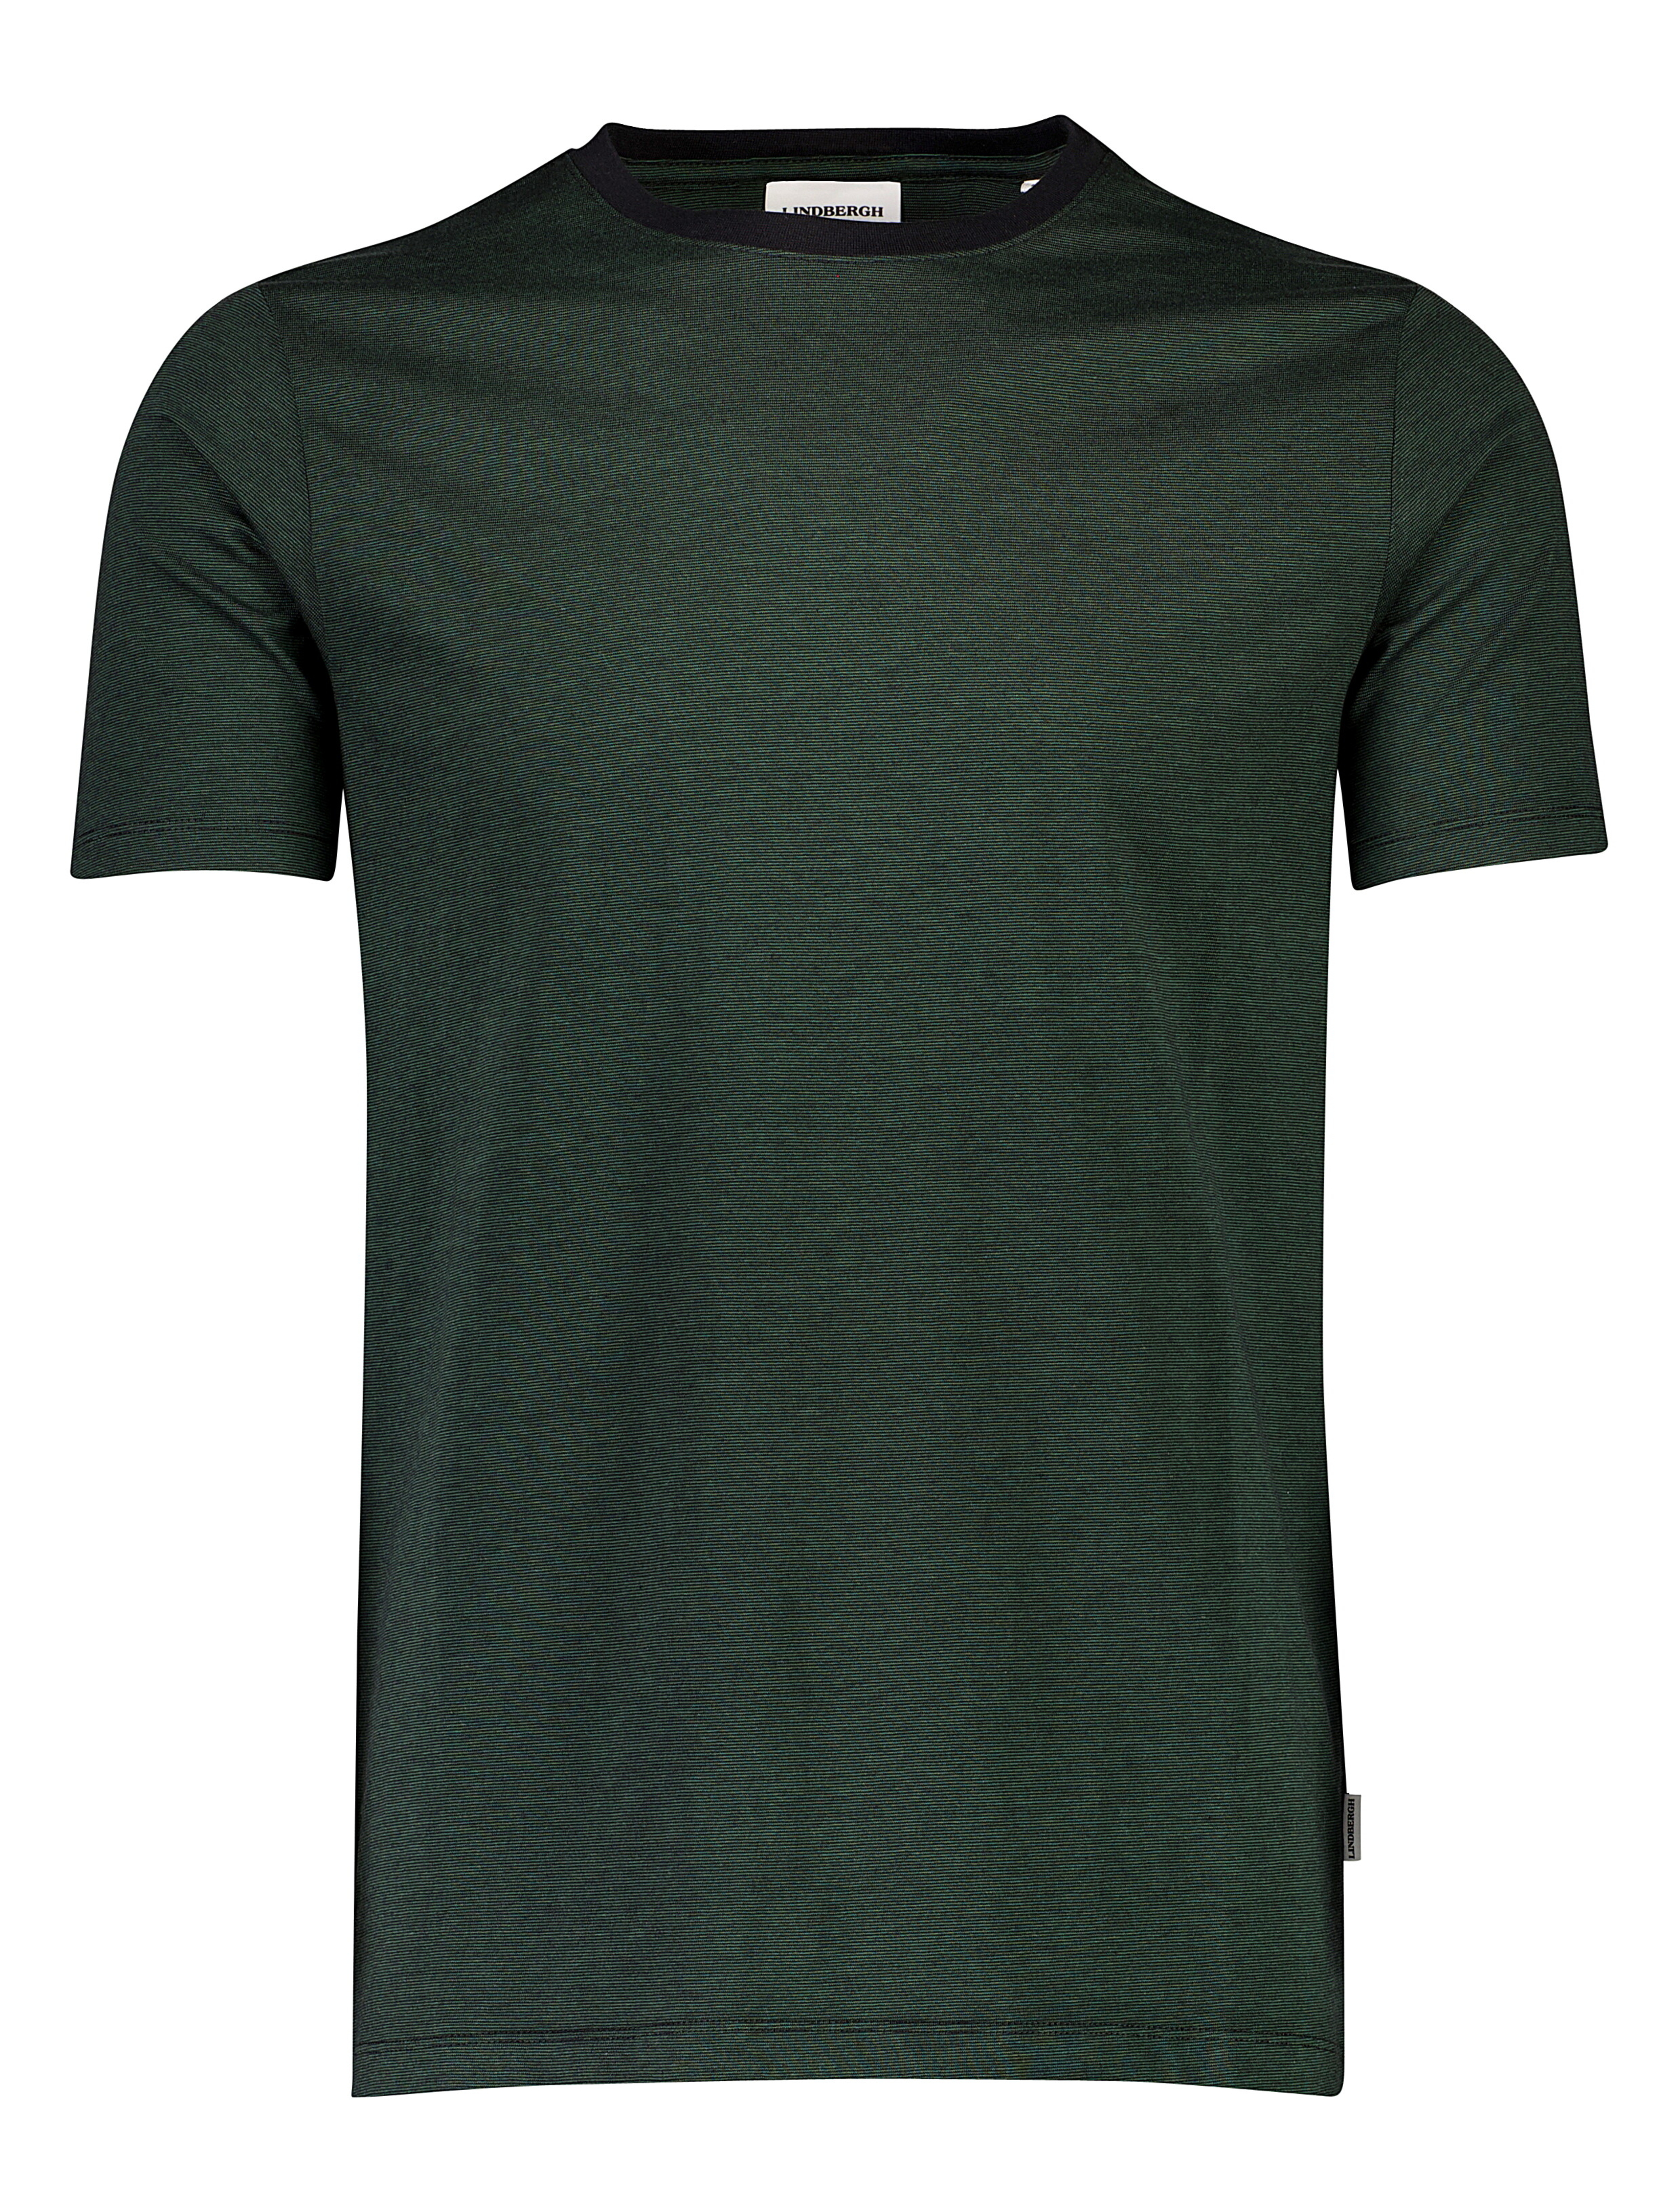 Lindbergh T-shirt grøn / green